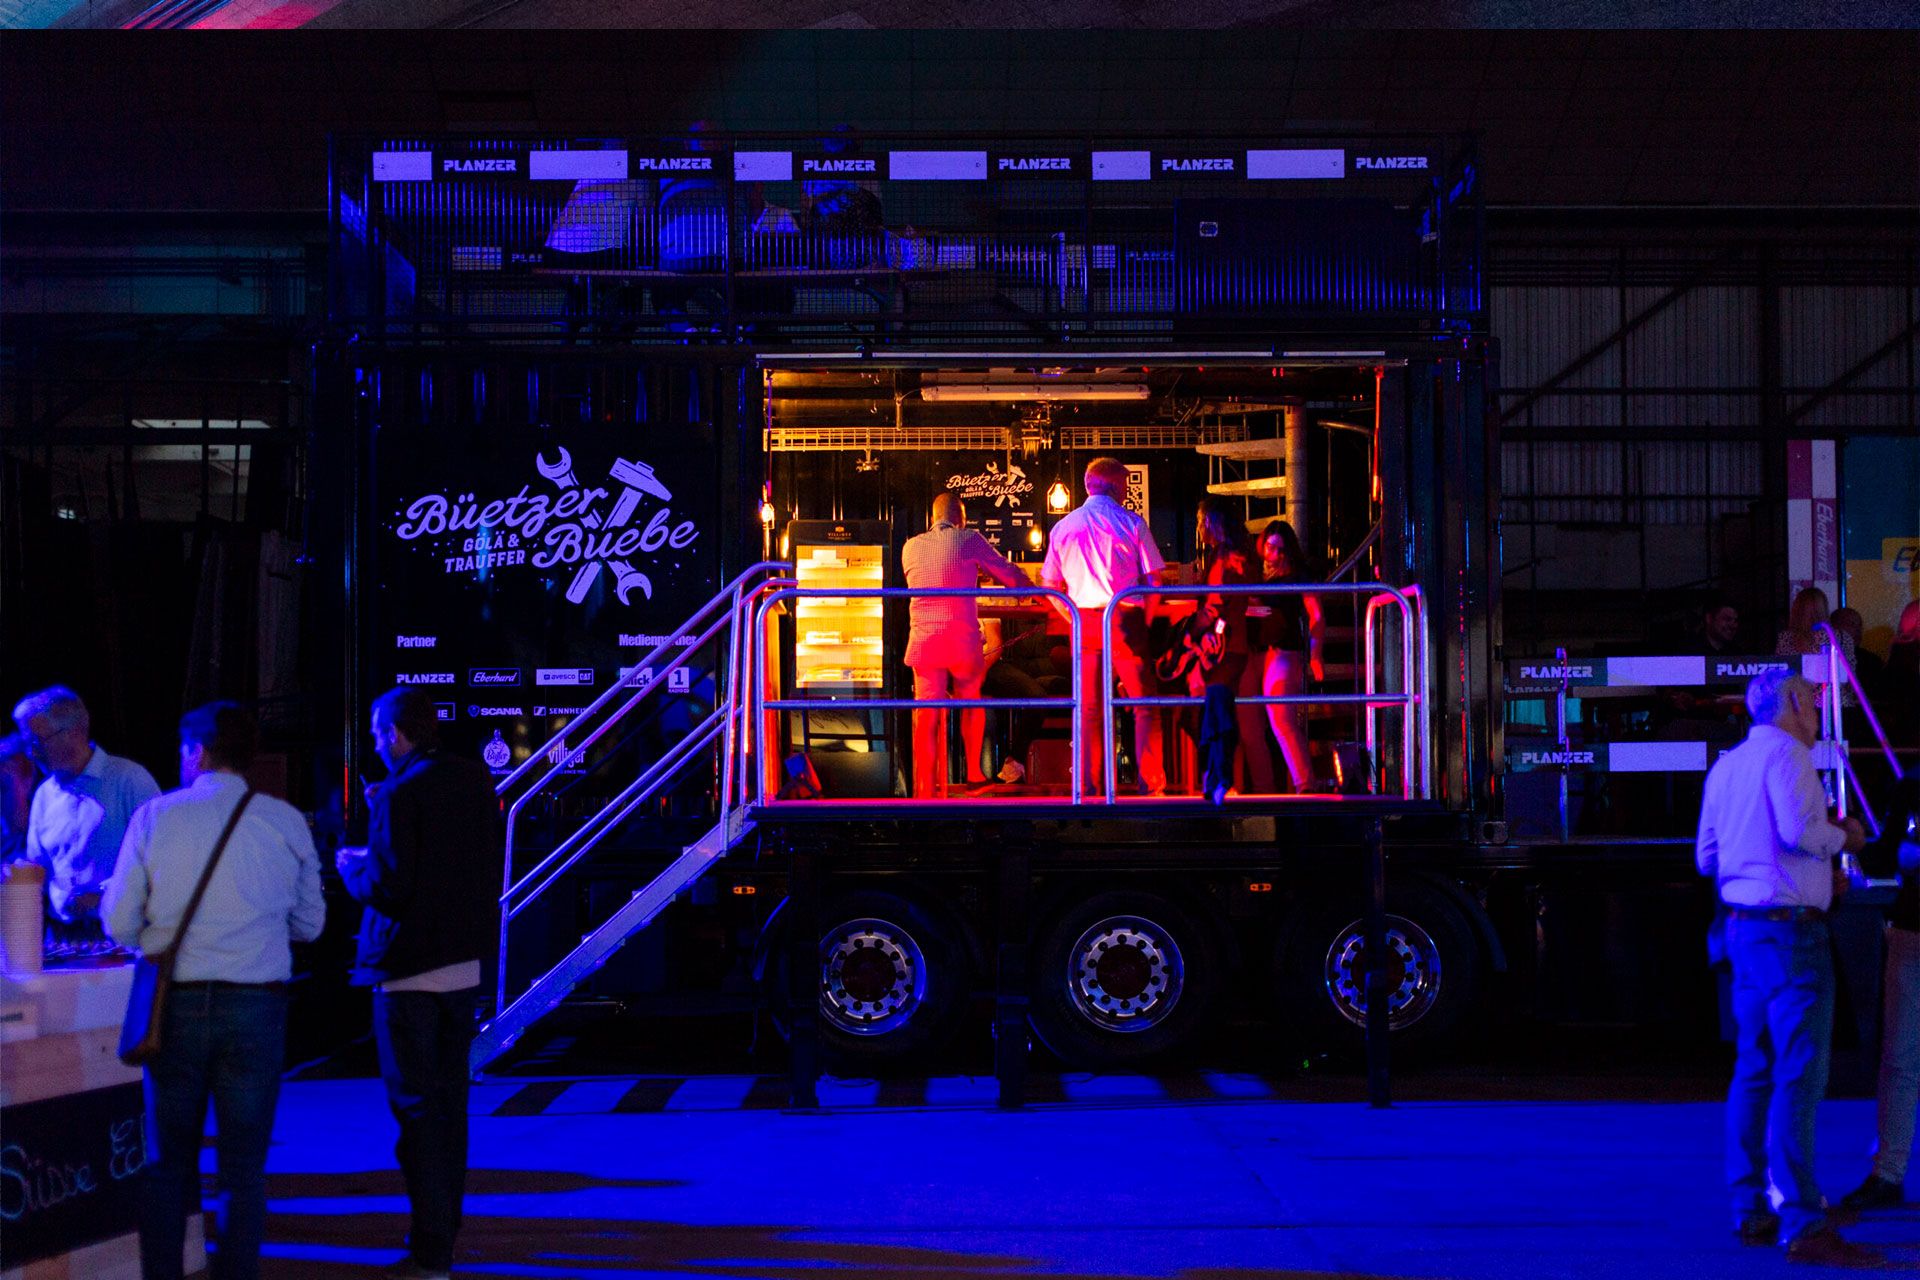 Besucher interagieren und geniessen eine Veranstaltung auf dem beleuchteten Event-Truck bei Nacht.